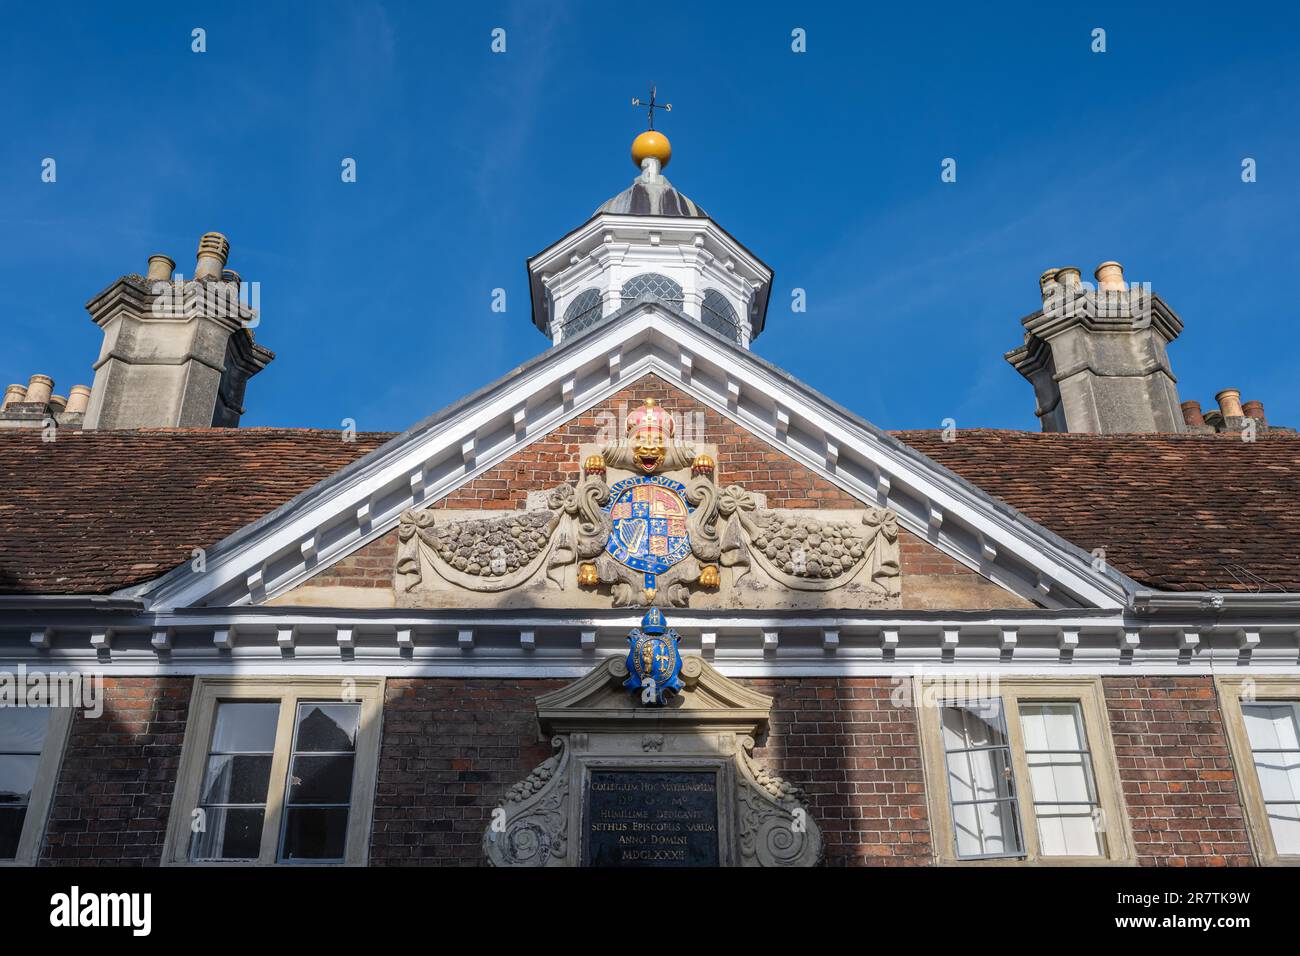 Particolare del College of Matrons costruito nel 1682 con lo stemma reale di Stuart, ex almshouse per vedove, Salisbury, Wiltshire, Inghilterra, Unito Foto Stock